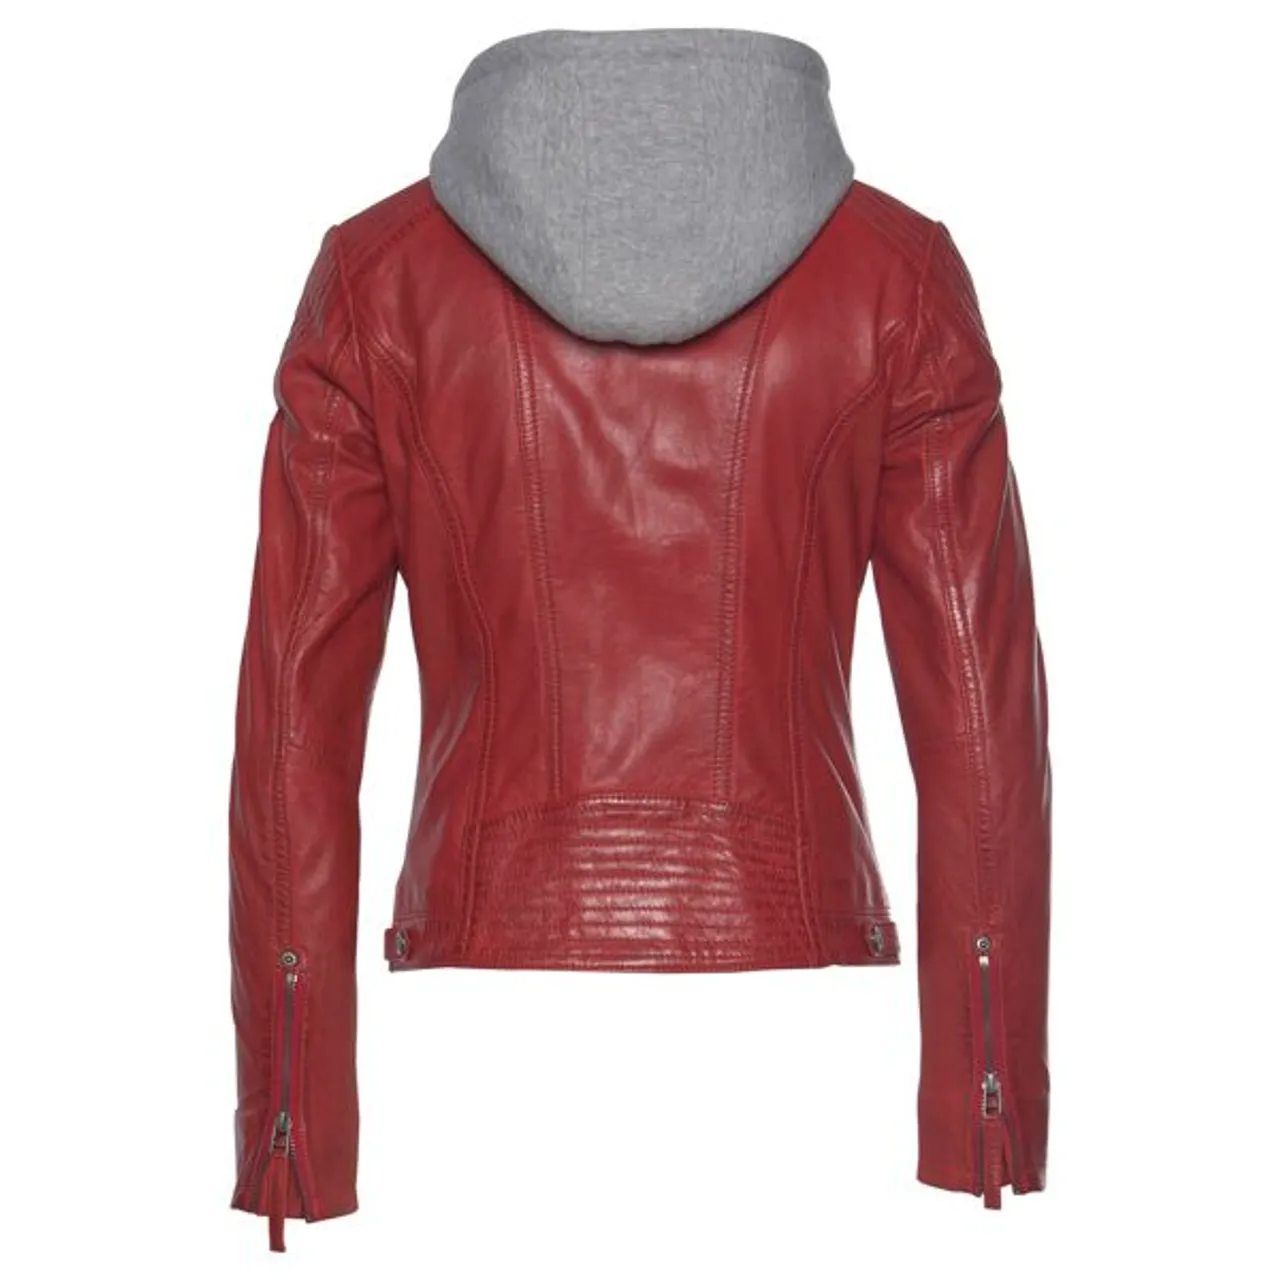 Lederjacke GIPSY "Junja" Gr. S/36, rot (red) Damen Jacken Lederjacken mit abnehmbarem Kapuzen-Einsatz und aufwendigen Biker-Details